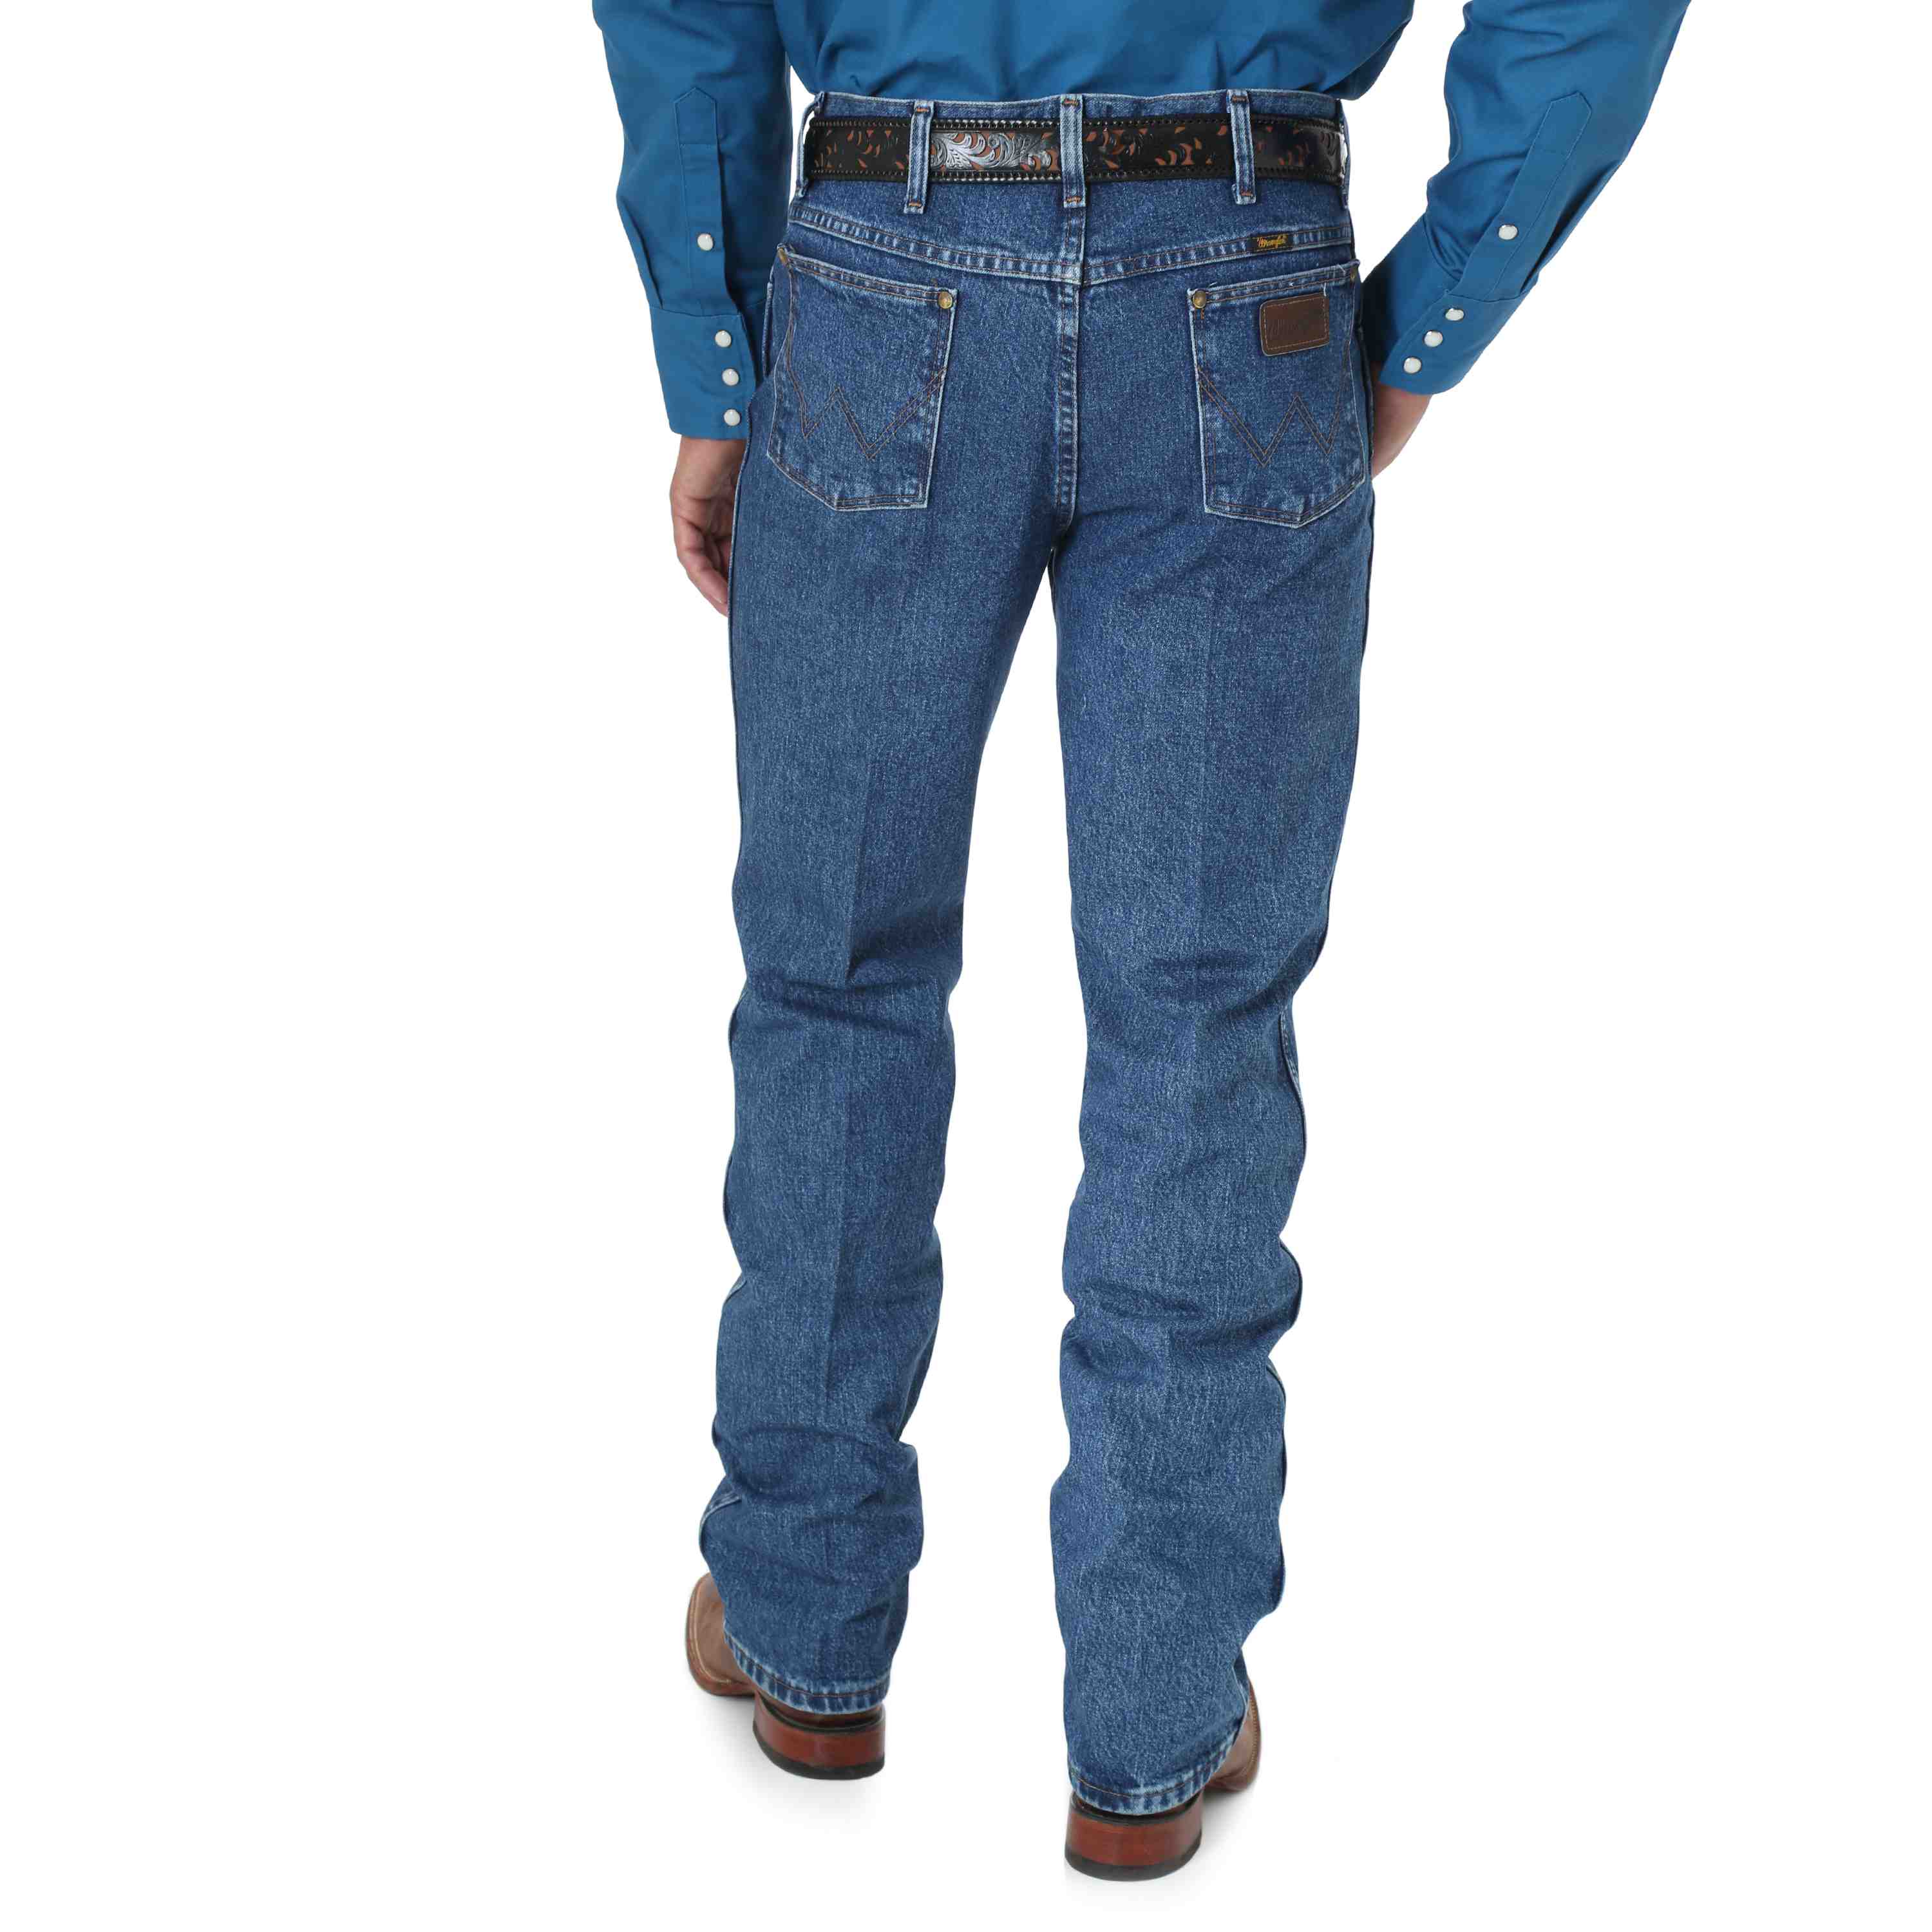 Men's Wrangler Jeans 33 X 30 - Gem